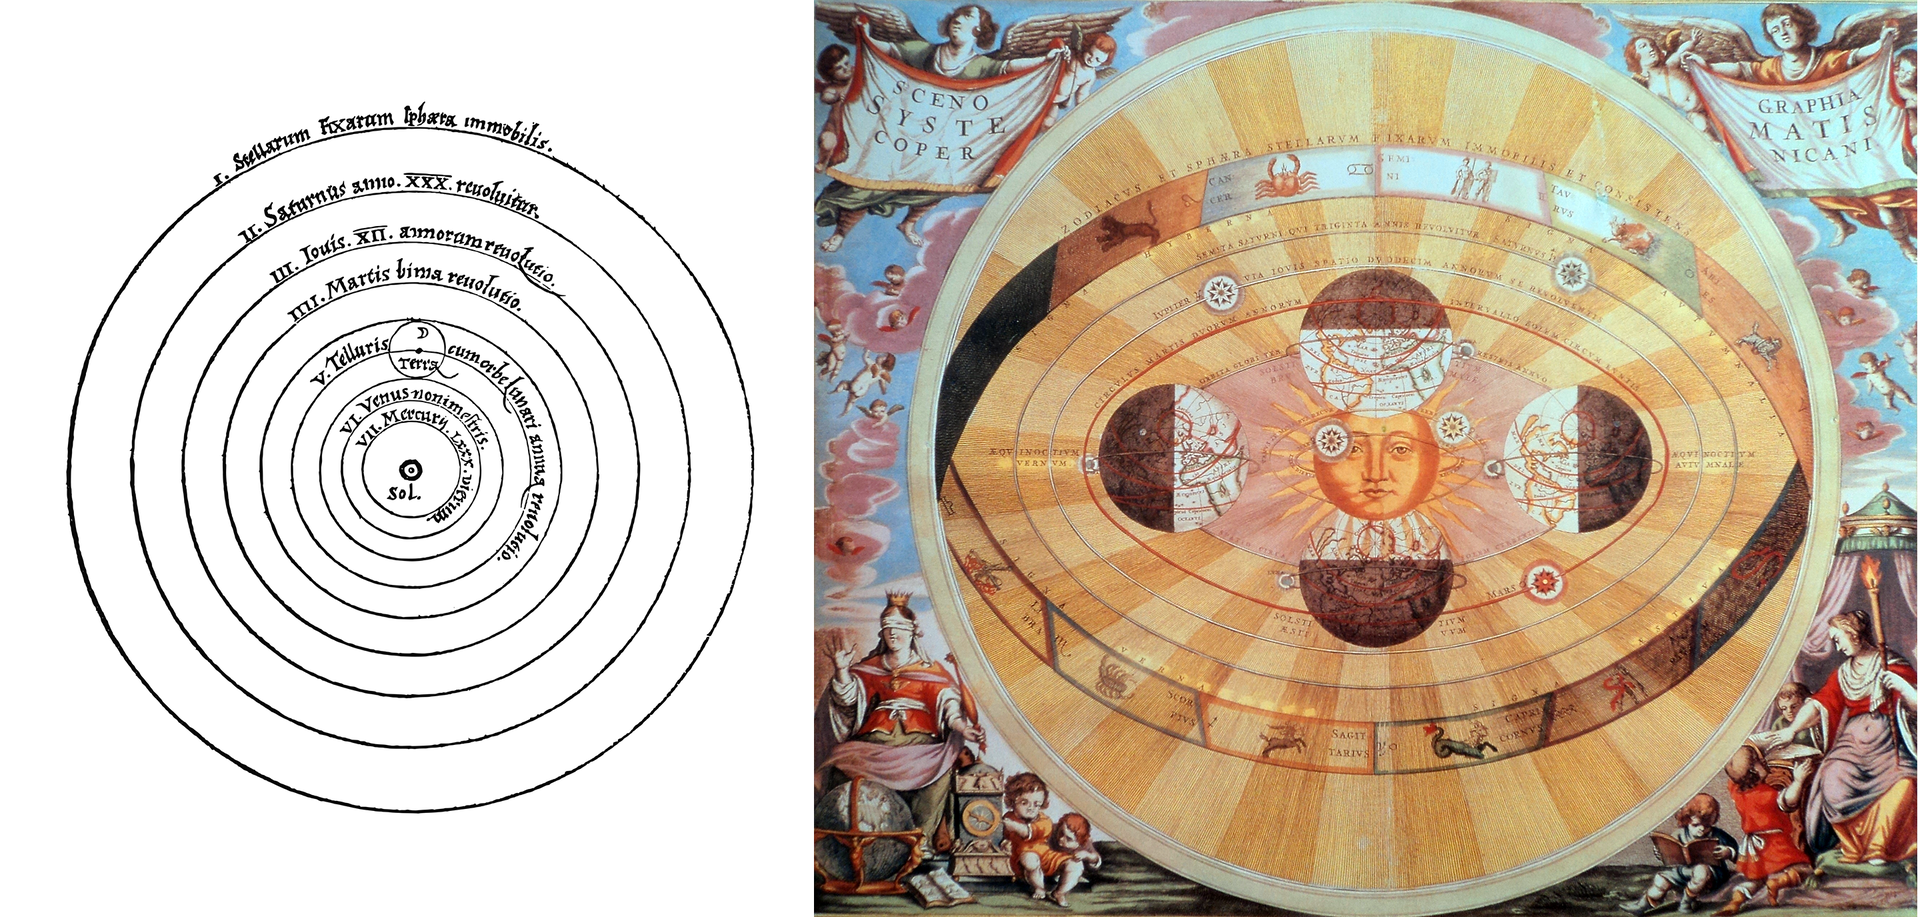 Ilustracja po lewej stronie, to szkic Układu Słonecznego zgodny z teorią heliocentryczną Mikołaja Kopernika. Na białym tle, w centrum zaznaczono Słońce, a dookoła niego, na czarnych okręgach, opisano planety Układu Słonecznego. Ilustracja obok przedstawia artystyczną kolorową wizję Układu Słonecznego. Dookoła żółtego Słońca z namalowaną ludzką twarzą, narysowano owalne orbity planet. Na pierwszej orbicie znajduje się Ziemia oświetlona w czterech różnych pozycjach. Od północy, wschodu, południa i zachodu. Na pociągłej linii orbity narysowane są również znaki zodiaku. Po lewej i prawej stronie, na rogach, widnieją postacie aniołów, trzymających flagi . Poniżej znajduje się kobieta z koroną na głowie i zasłoniętymi oczami, siedząca przy globusie z małymi dziećmi, a po drugiej stronie, widnieje kobieta z zapaloną pochodnią, czytająca księgę.